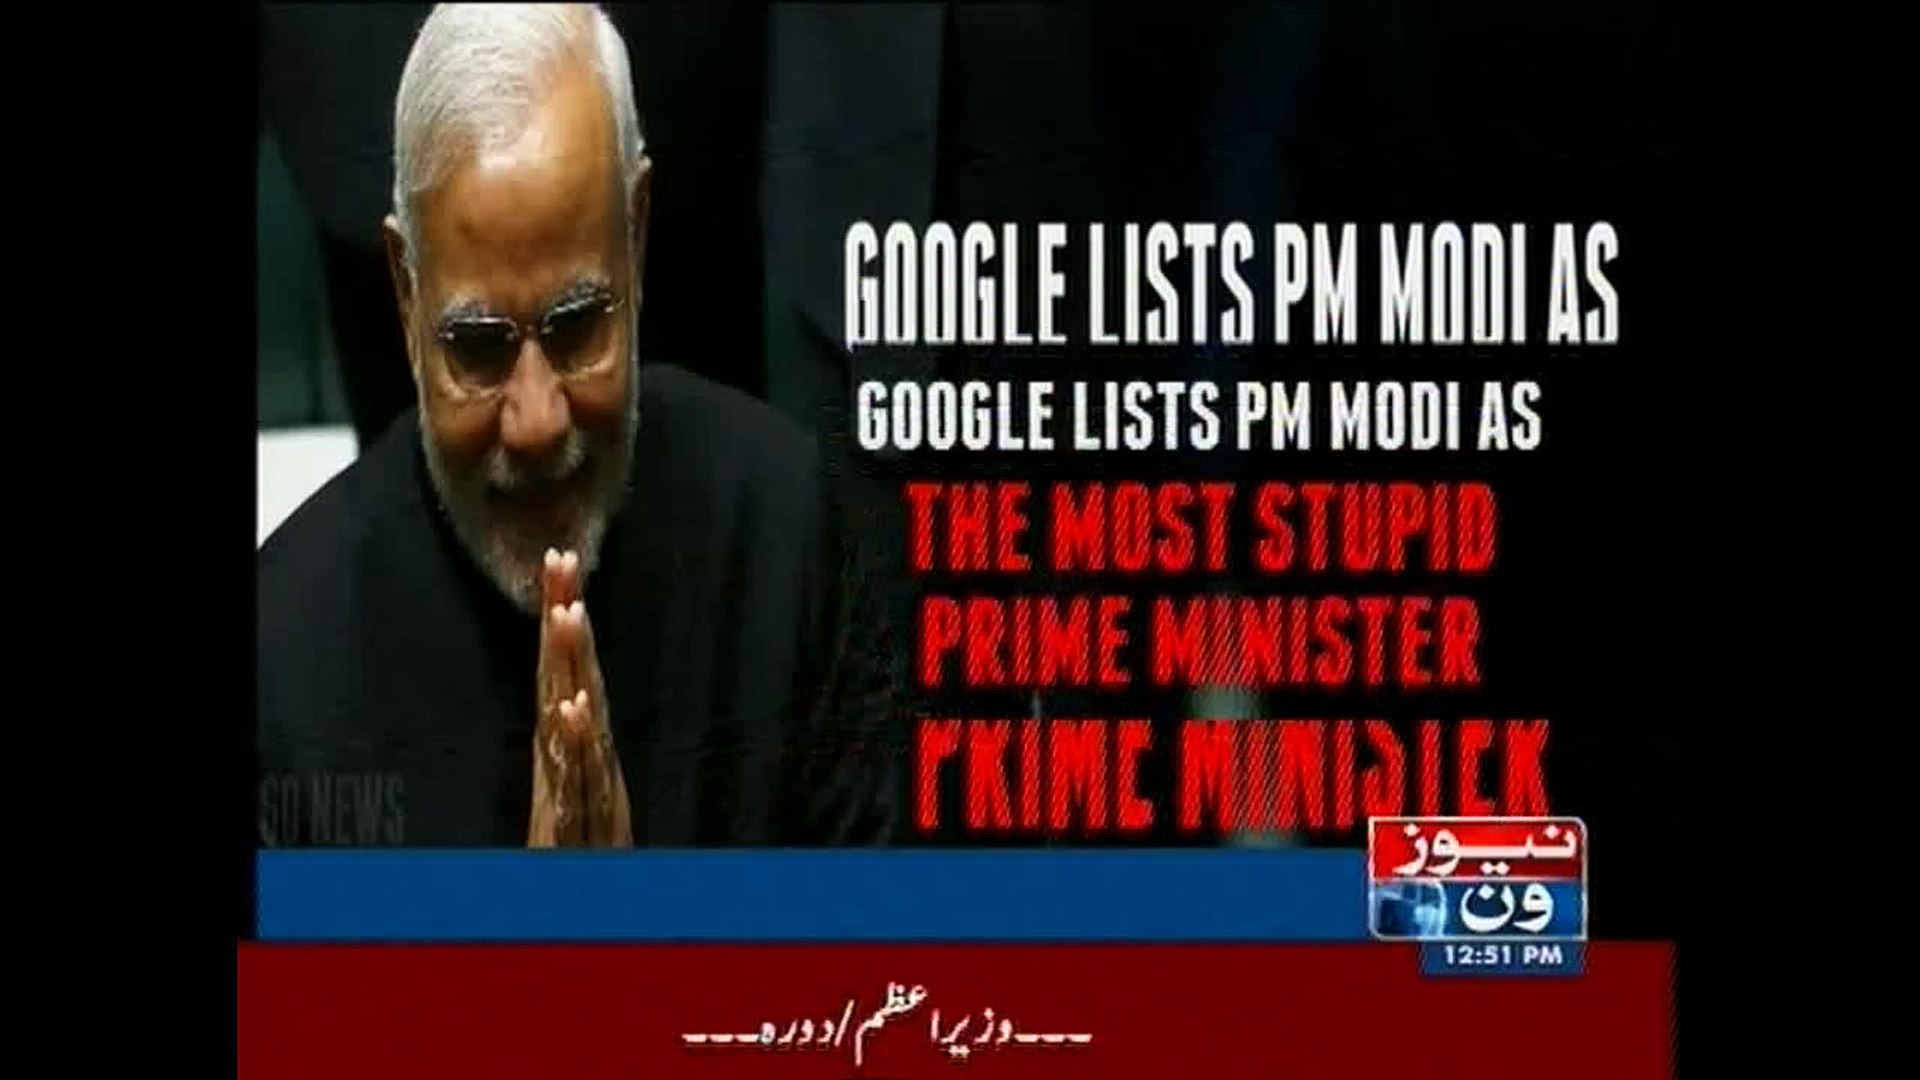 World stupid prime minister name